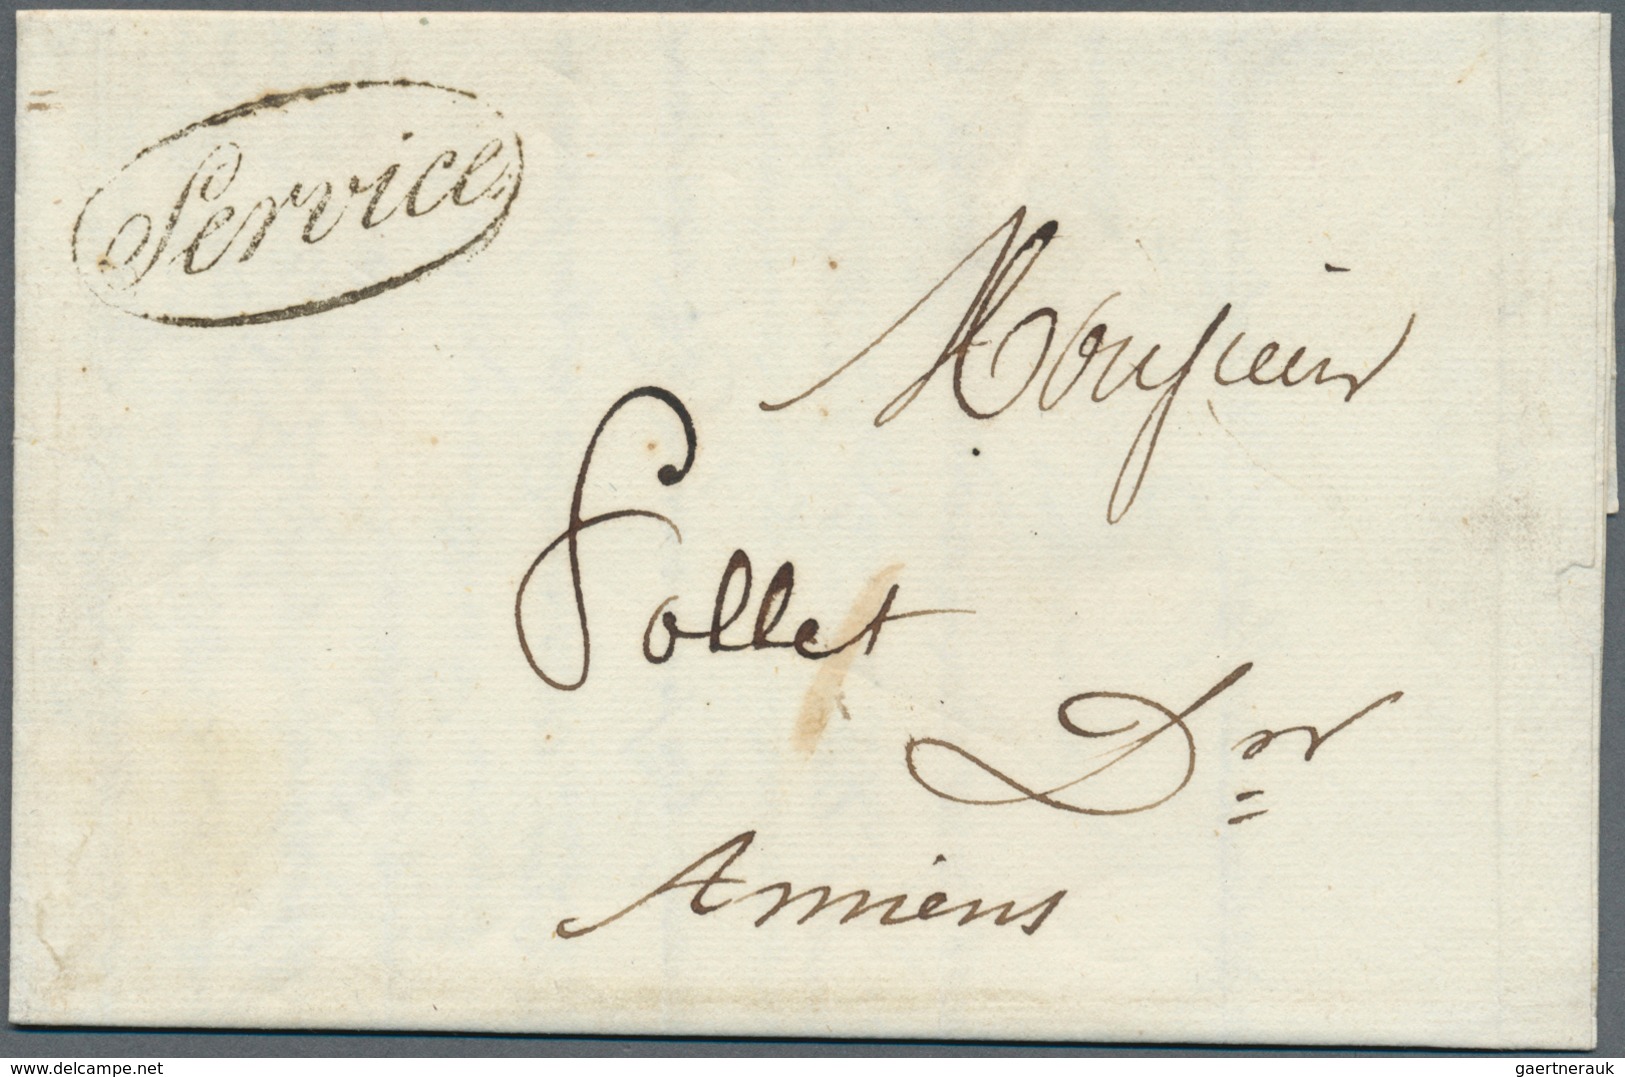 26351 Frankreich - Vorphilatelie: 1788/1866, mehr als 80 vorphilatelistische bzw. markenlose Briefe, vielf